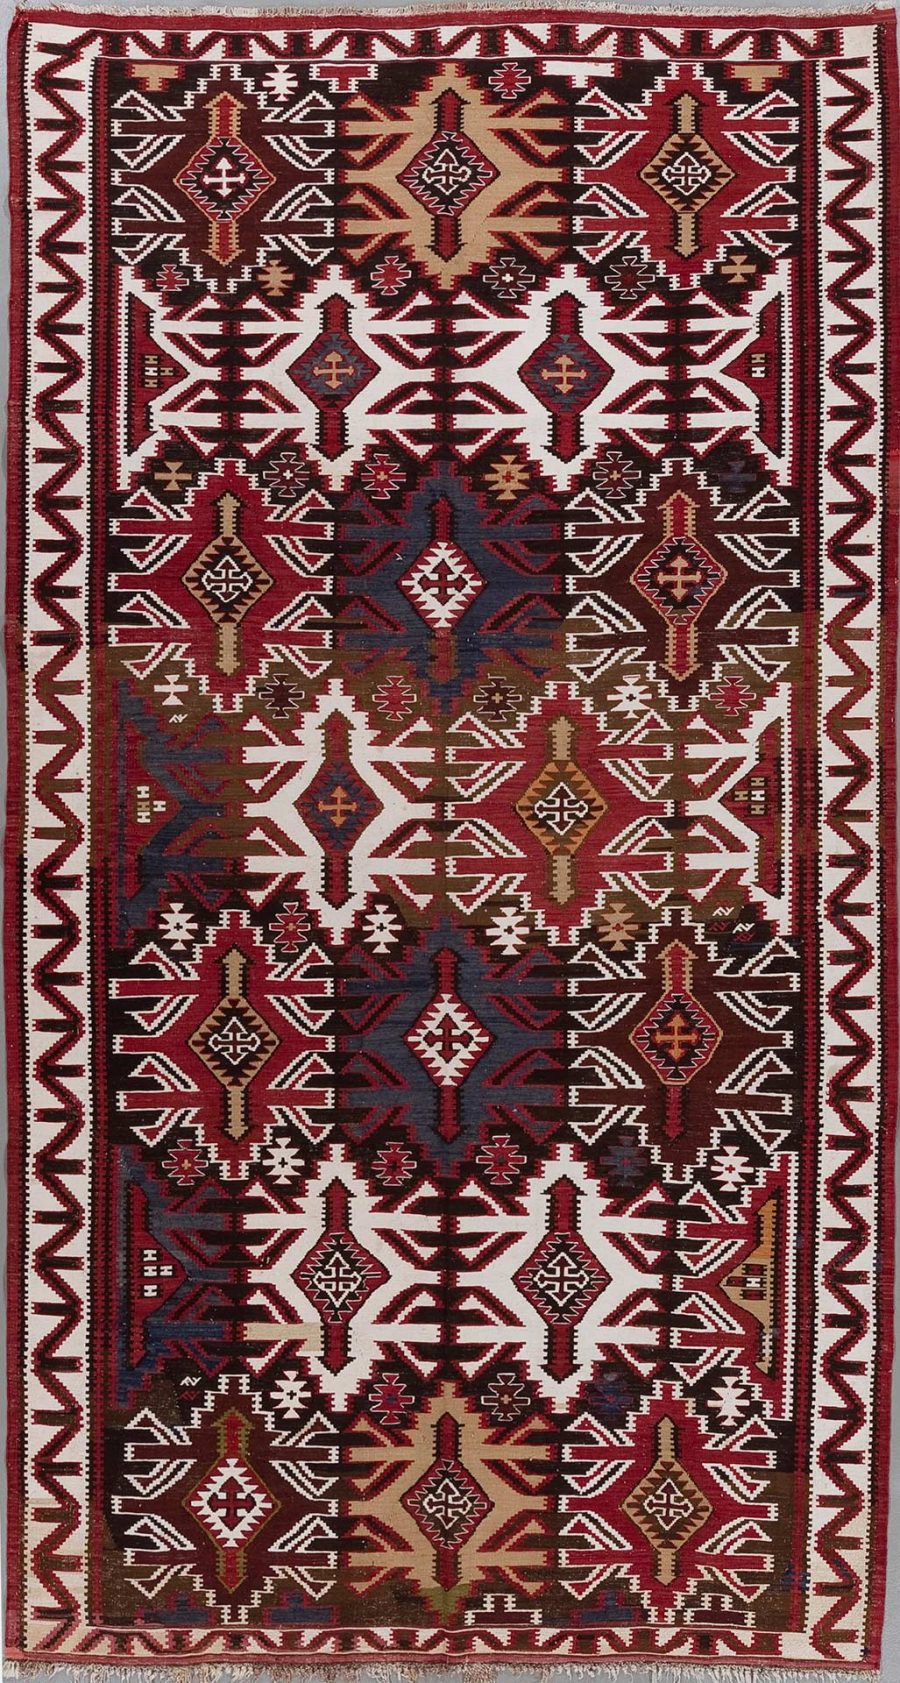 Traditioneller handgeknüpfter Teppich mit komplexem geometrischem Muster in Rot, Schwarz, Weiß und Braun.